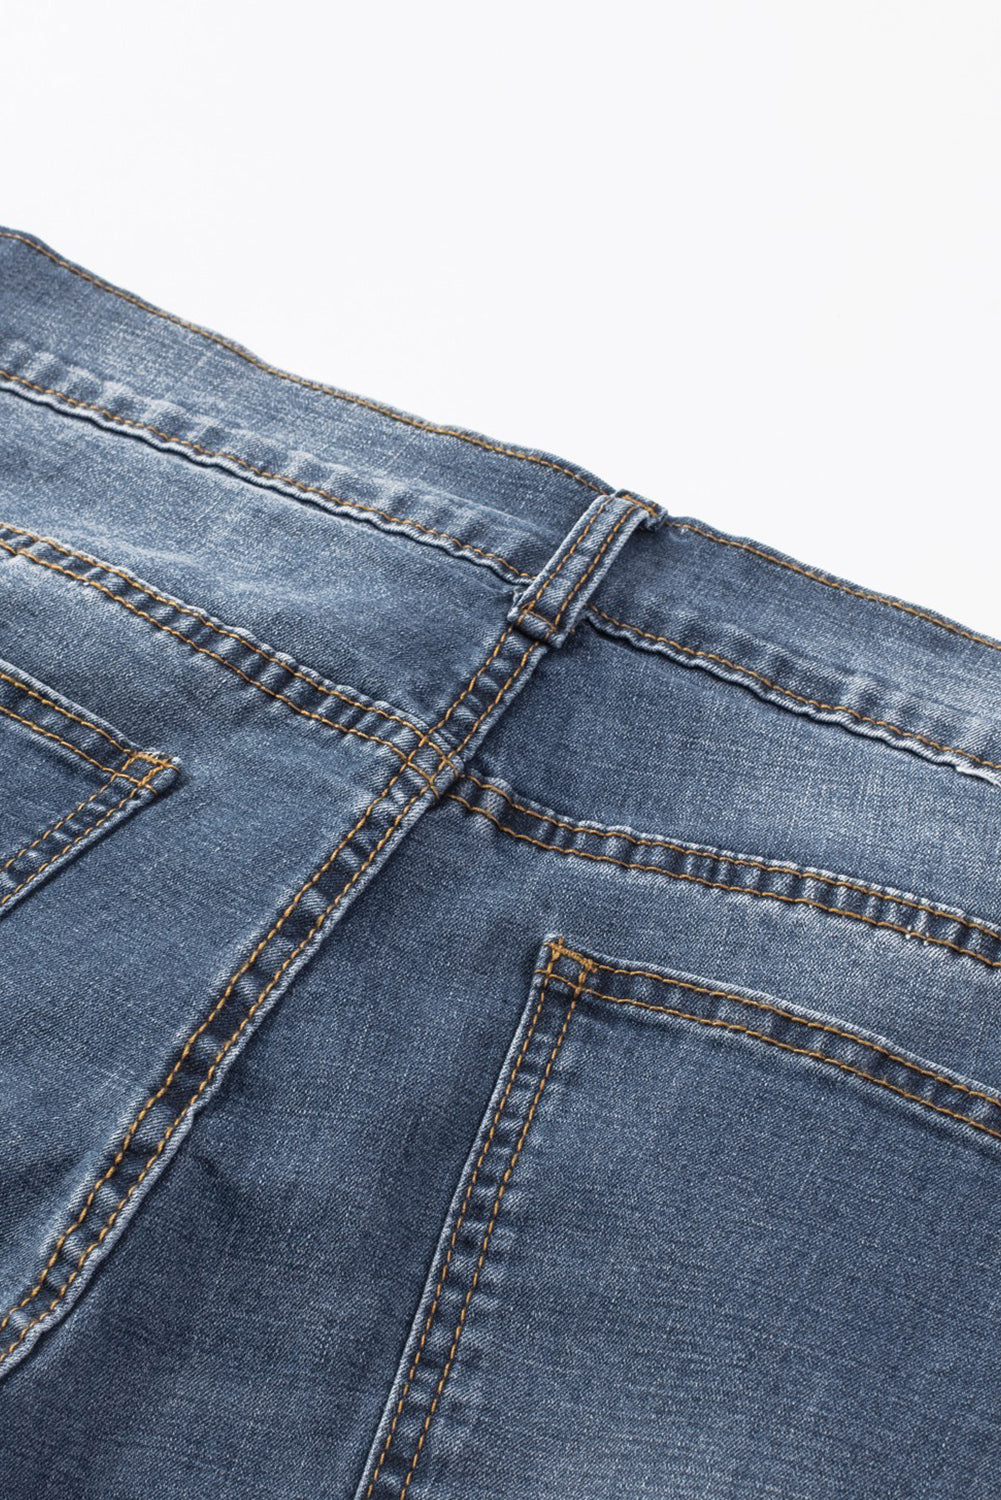 Blue Faith Over Fear Cross Print Distressed Men's Denim Shorts Men's Pants JT's Designer Fashion